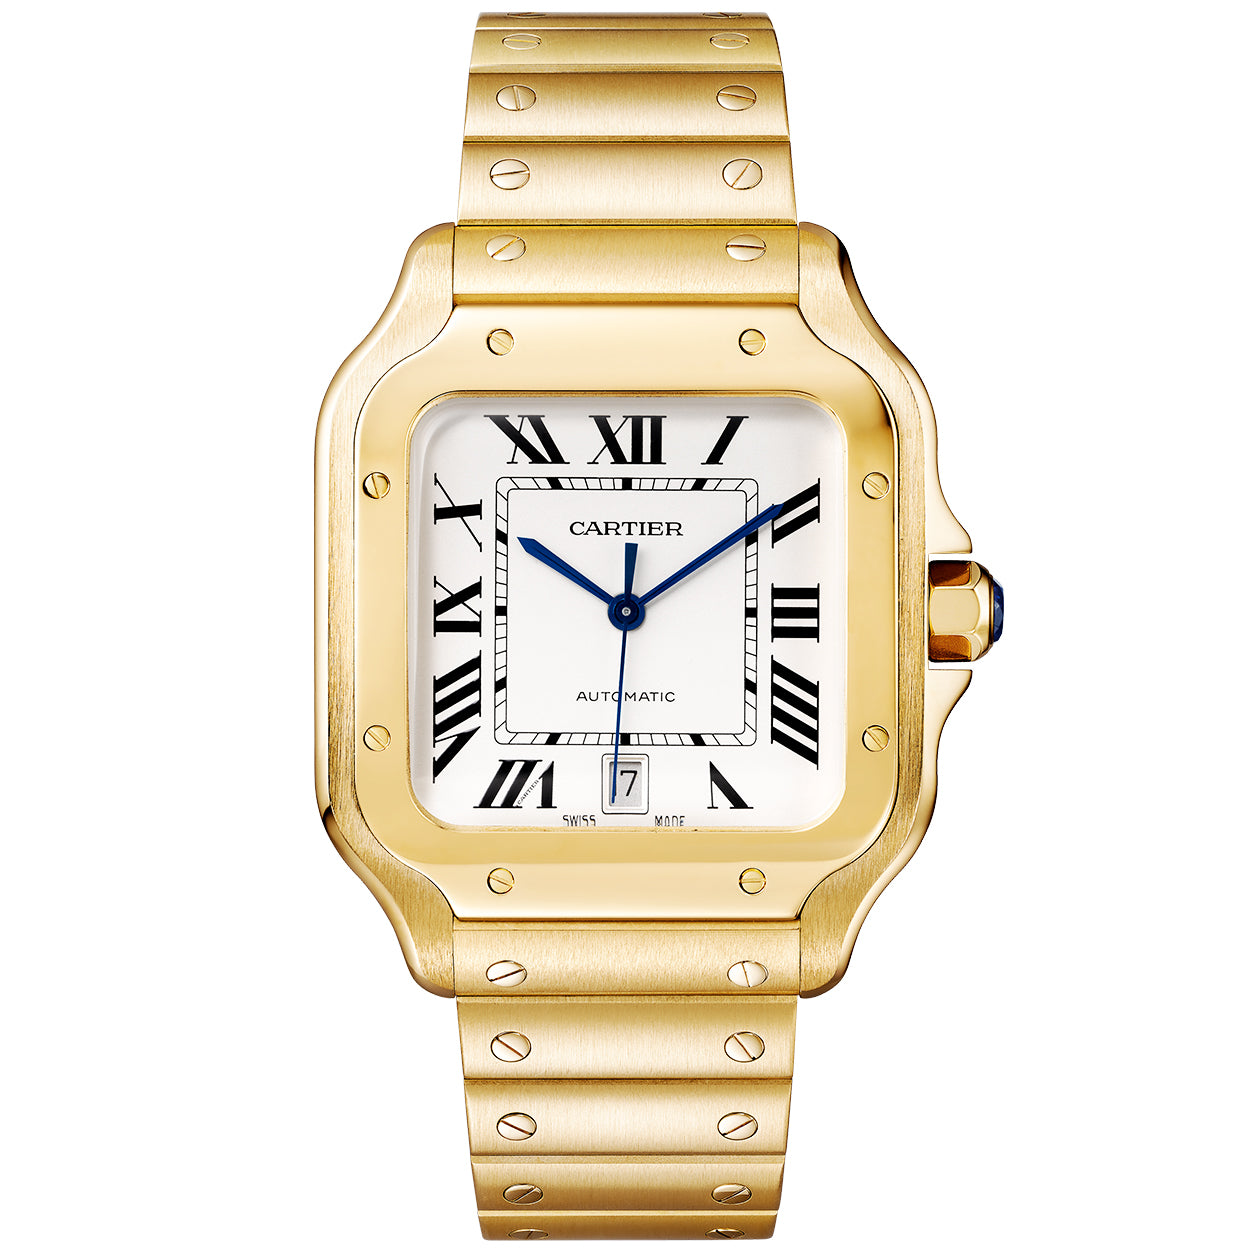 Santos de Cartier Large Automatic 18ct Yellow Gold Bracelet Watch